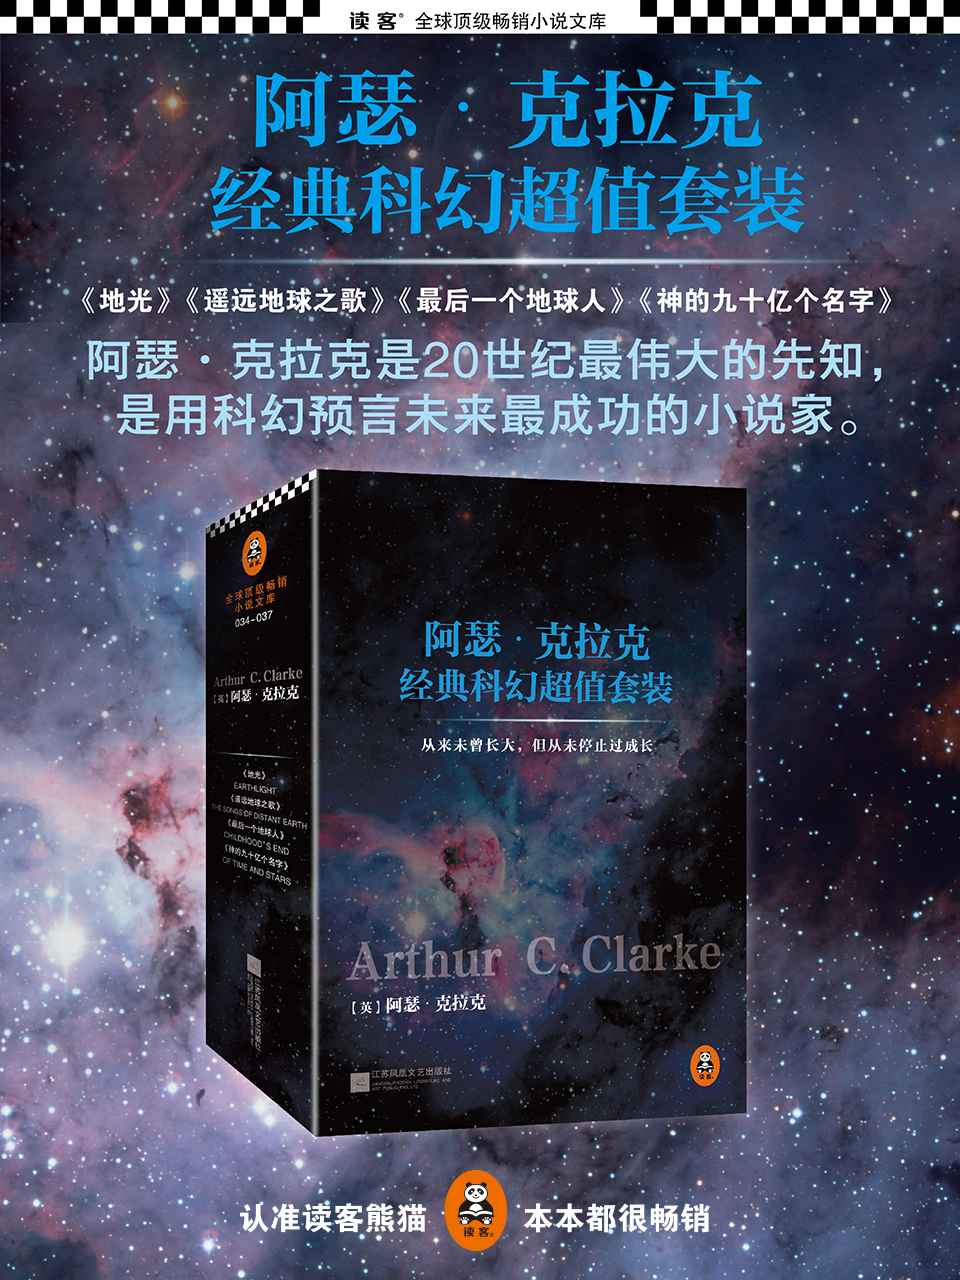 阿瑟·克拉克经典科幻超值套装(神的九十亿个名字+最后一个地球人+遥远地球之歌+地光)(套装共4册)（读客全球顶级畅销小说文库）